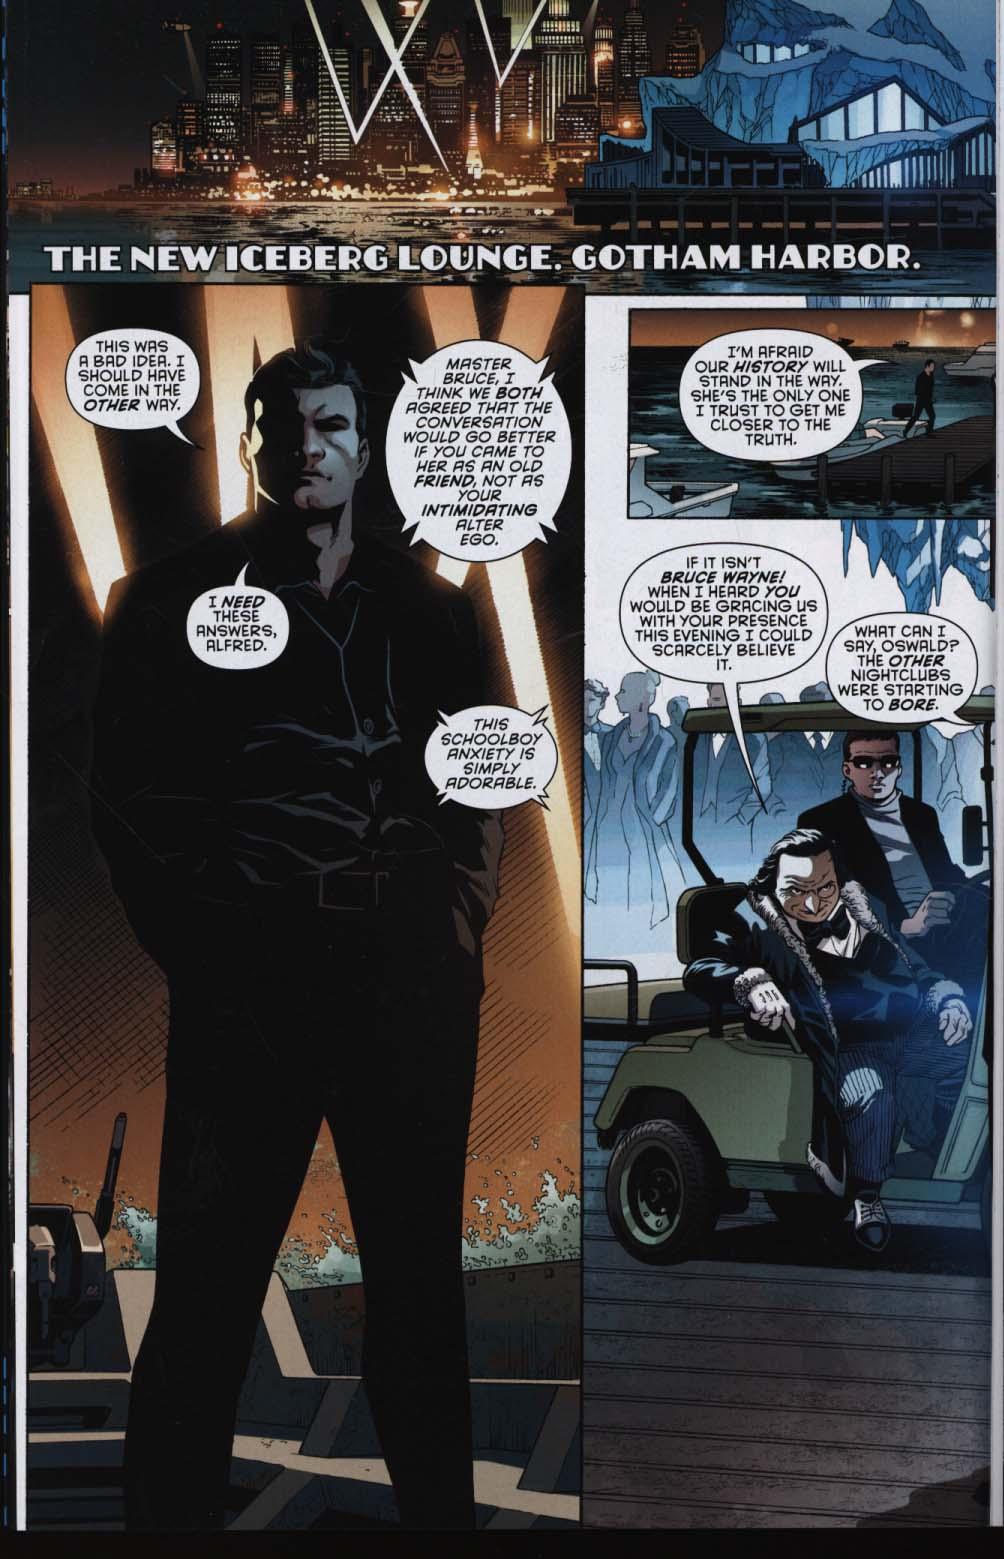 Batman Detective Comics Vol. 4 Intelligence (Rebirth)